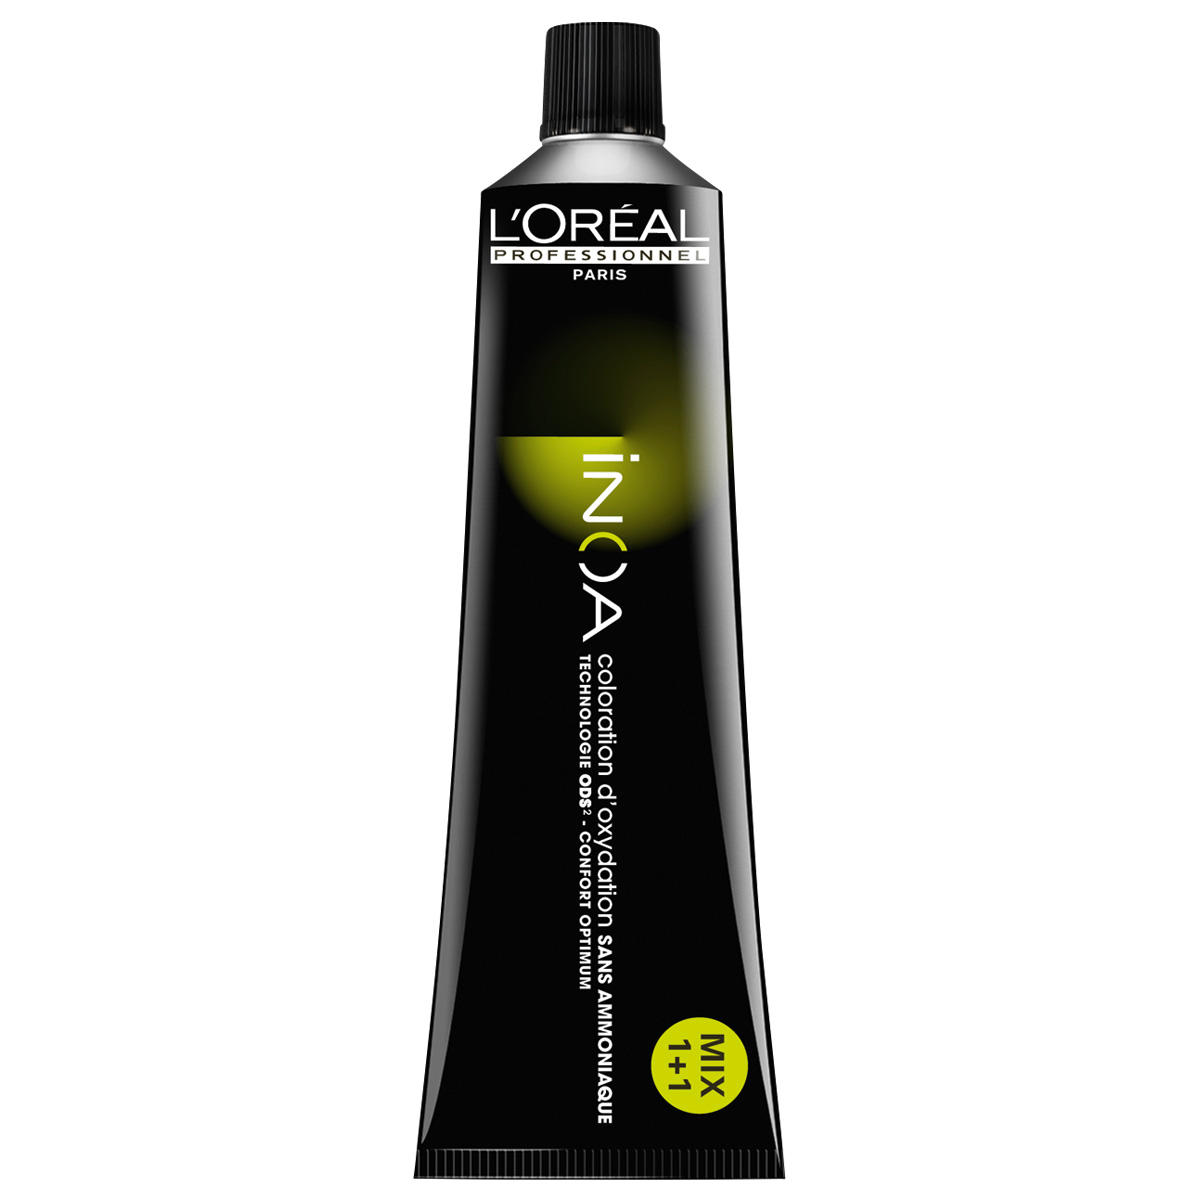 L'Oréal Professionnel Paris Coloration 6.34 Biondo scuro oro rame, tubo 60 ml